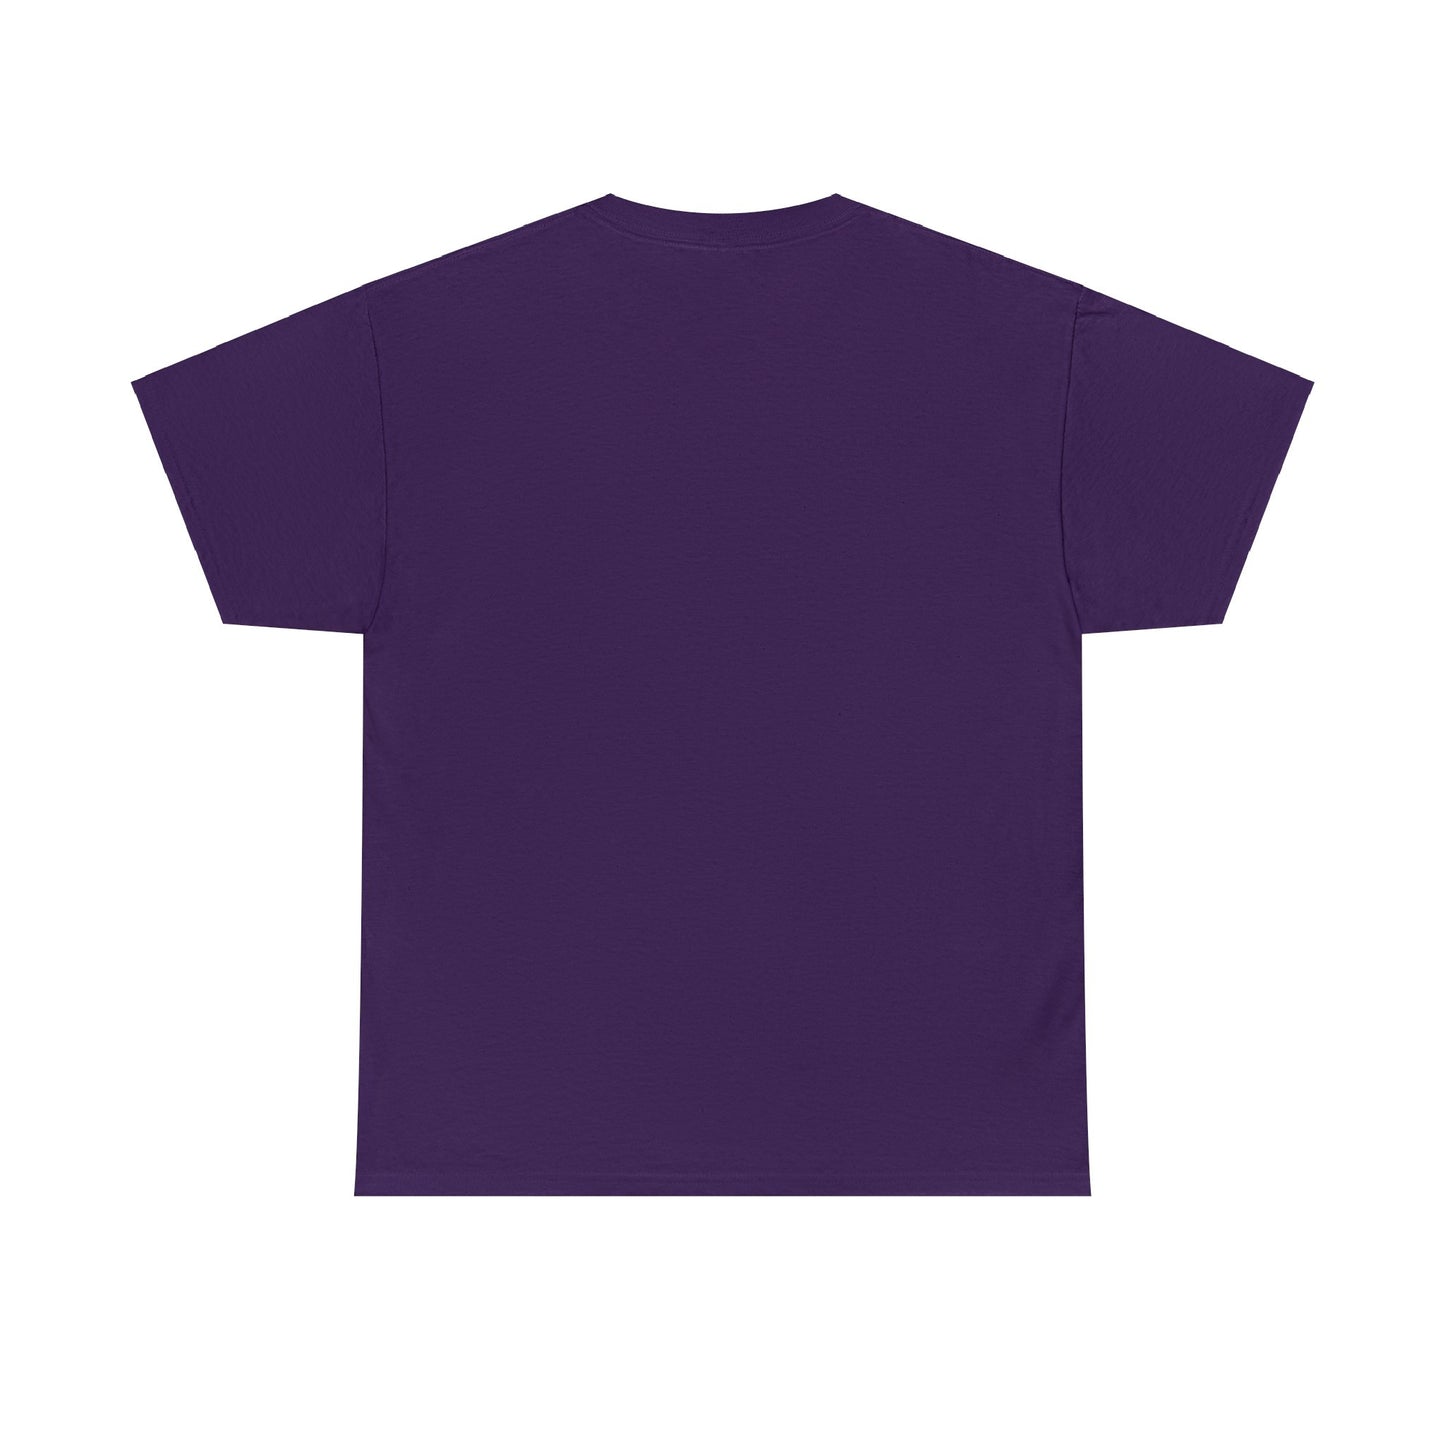 Borkenkäferplätzchen T-Shirt (kleines Logo) in allen Farben